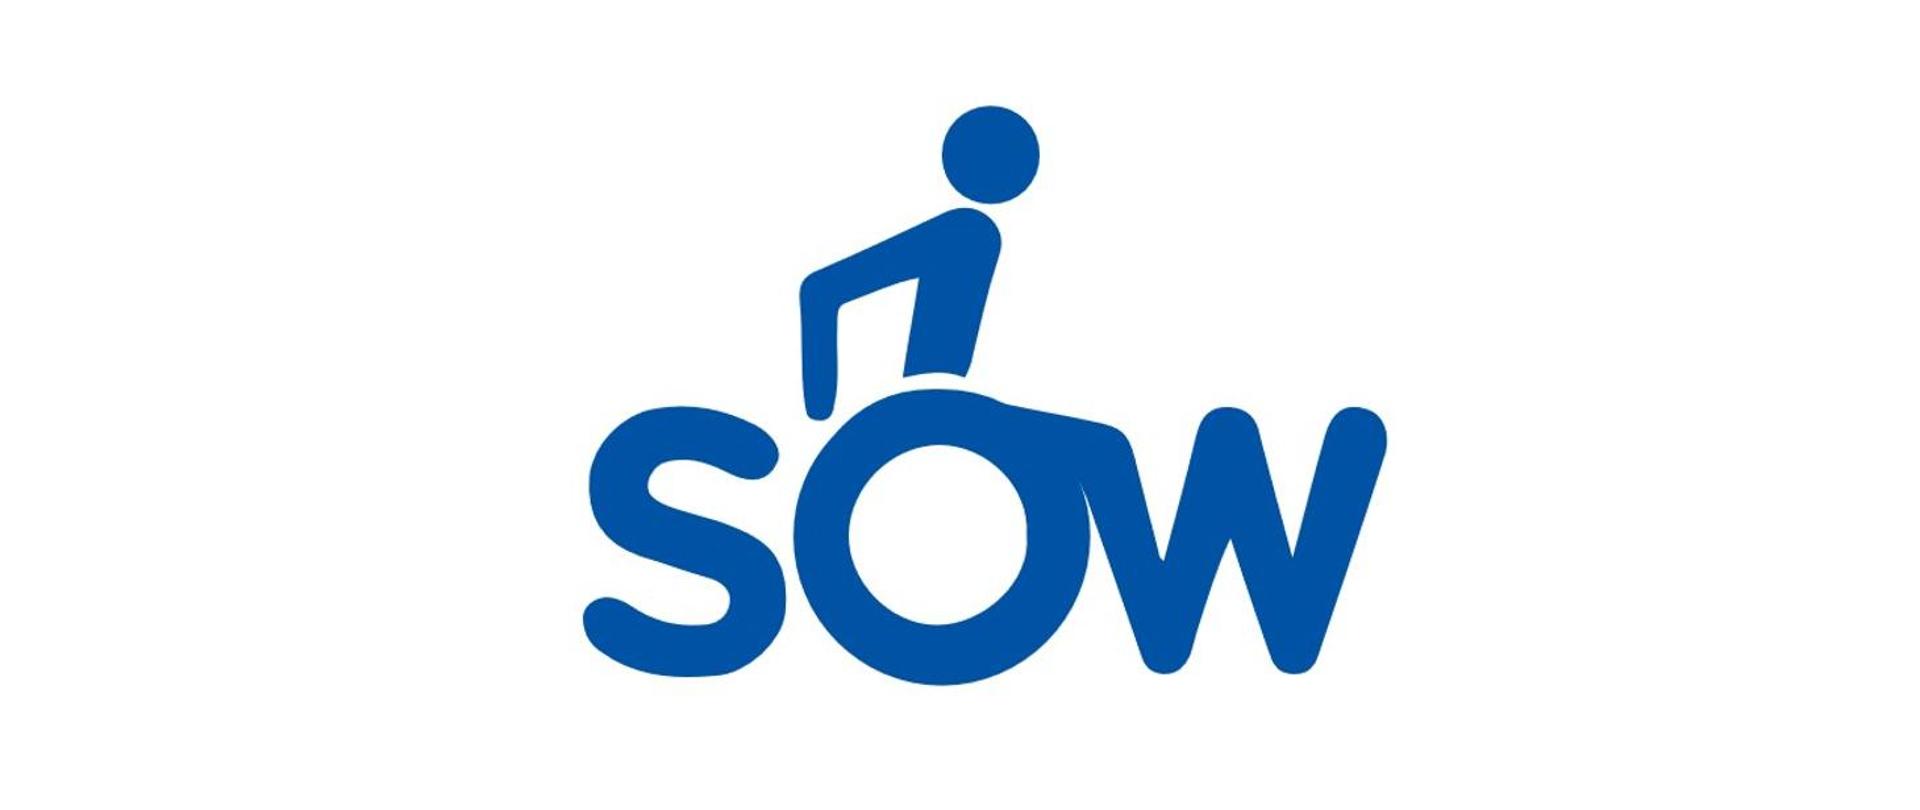 Na białym tle napis SOW, przy czym litera "o" imituje koła wózka inwalidzkiego, nad tą literą grafika osoby siedzącej na wózku